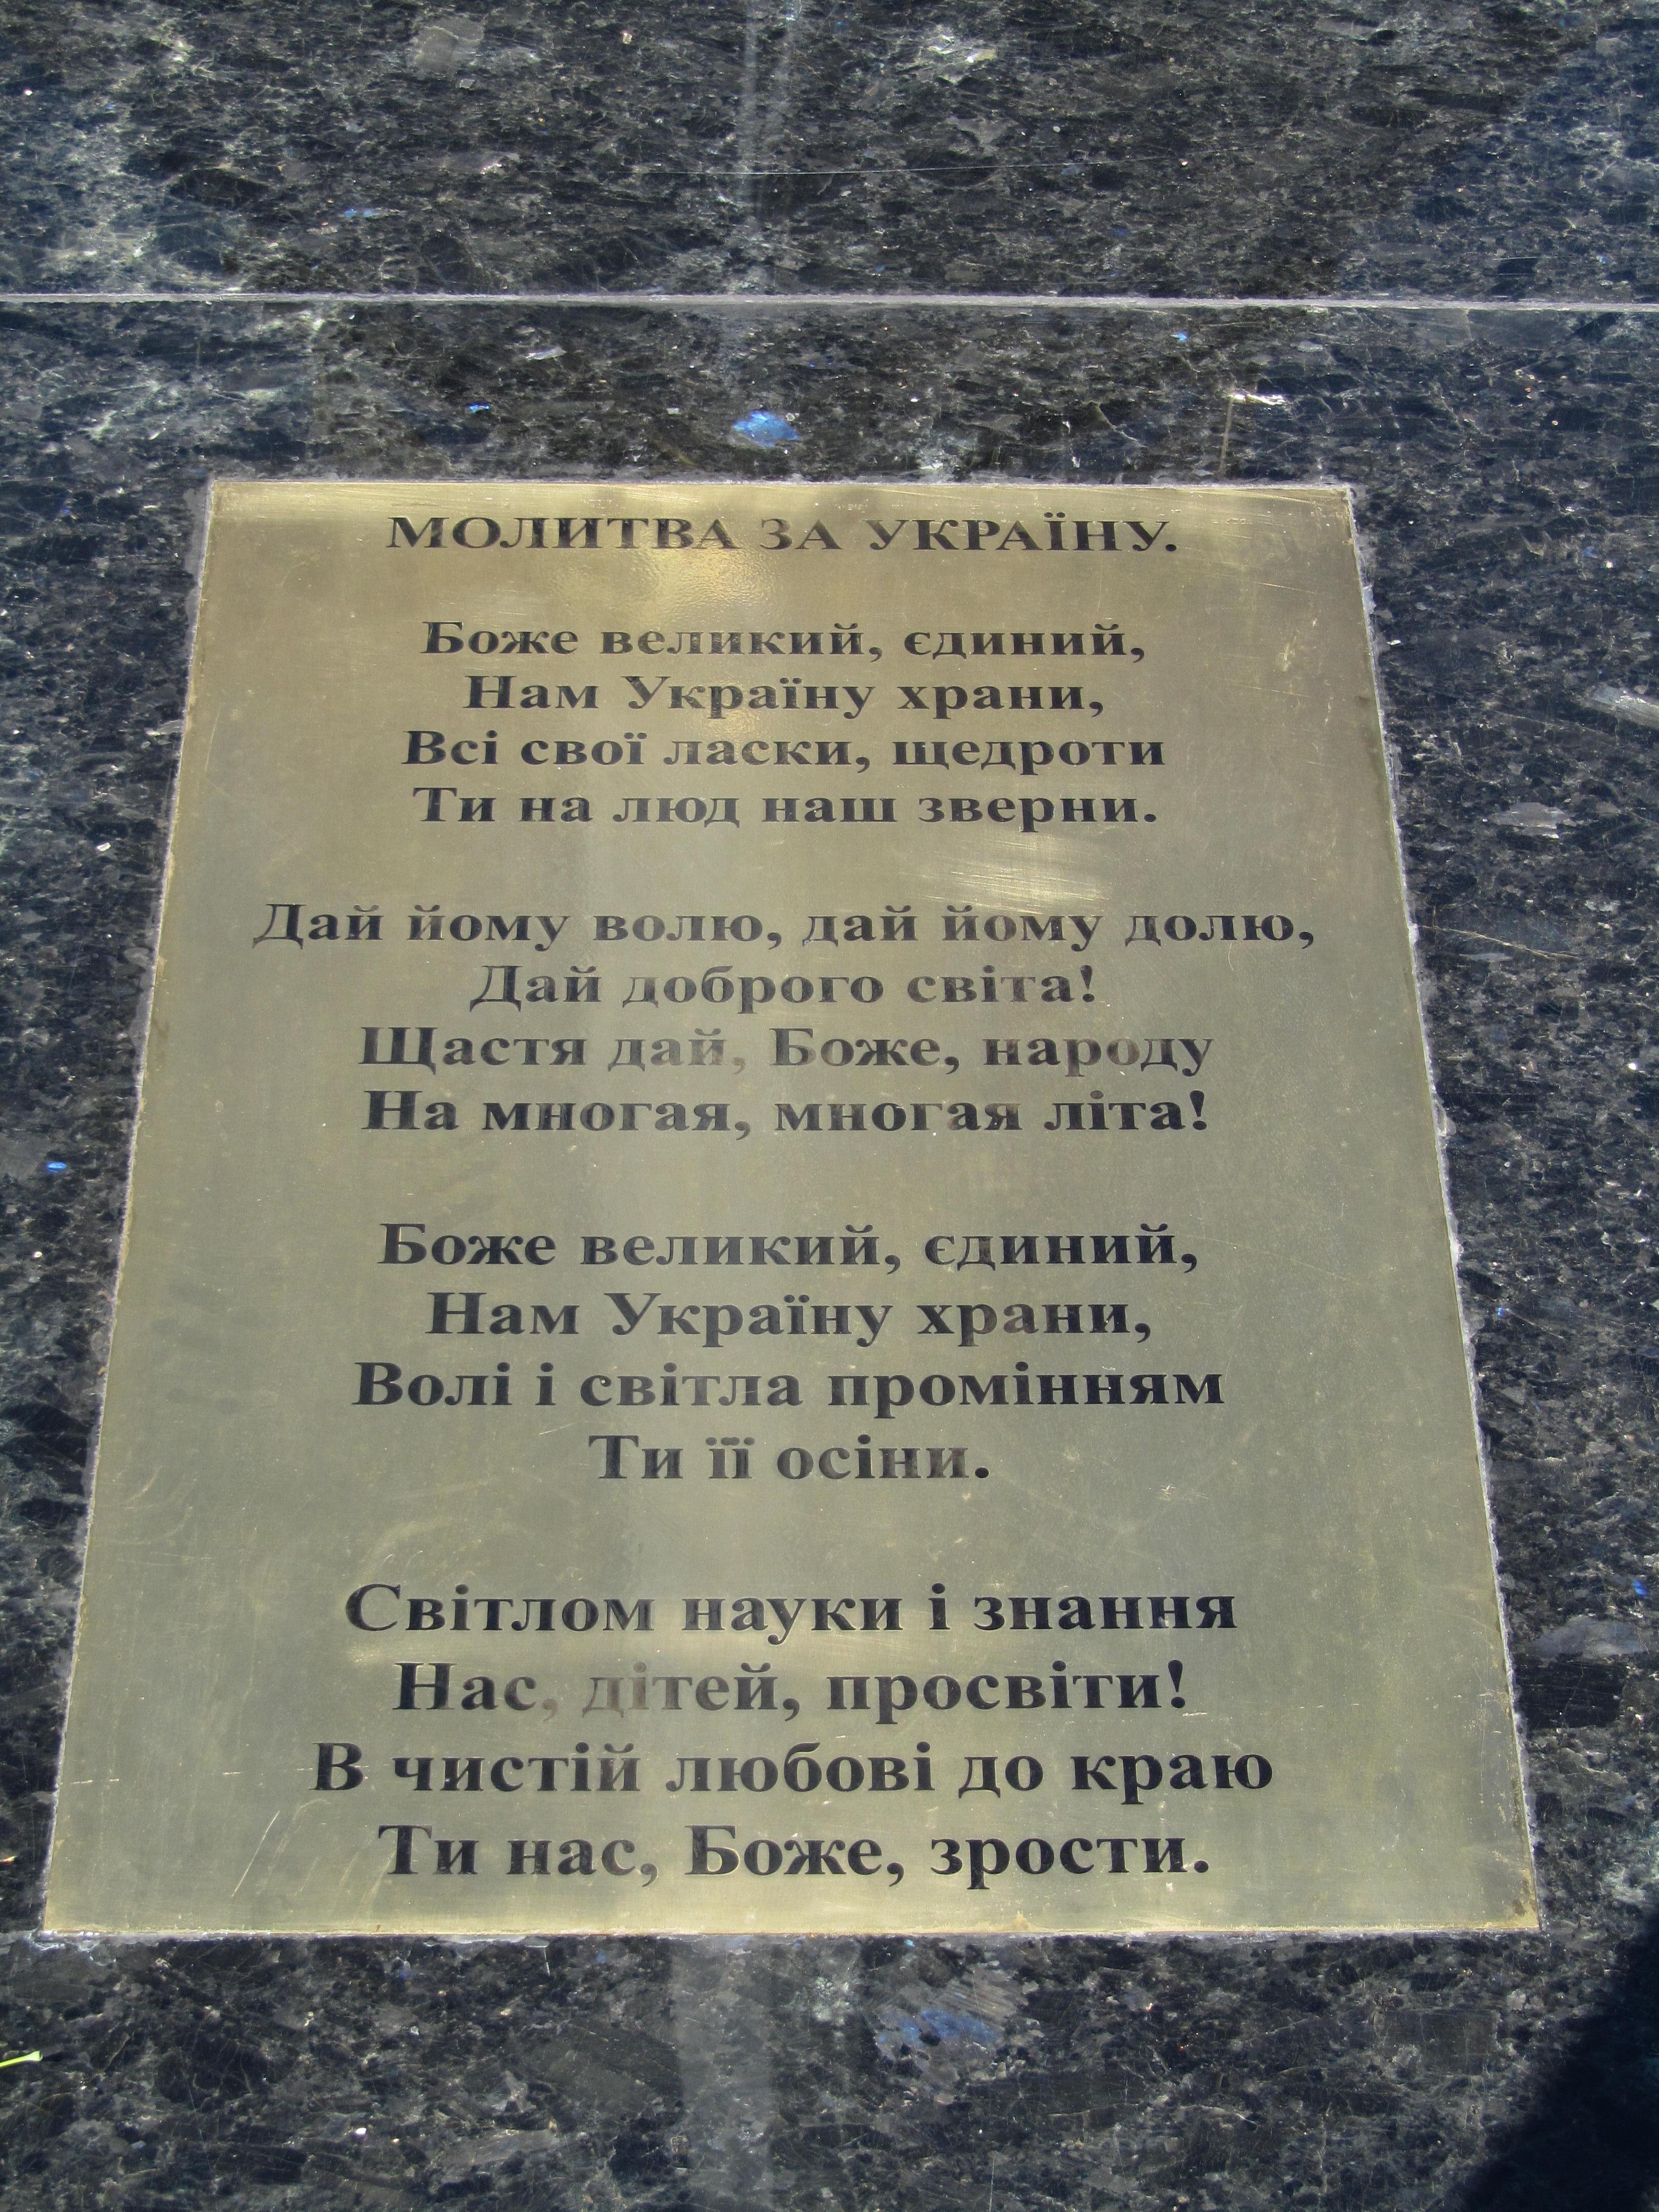 Слова Молитви за Україну на постаменті у місті Зміїв, Харківська область